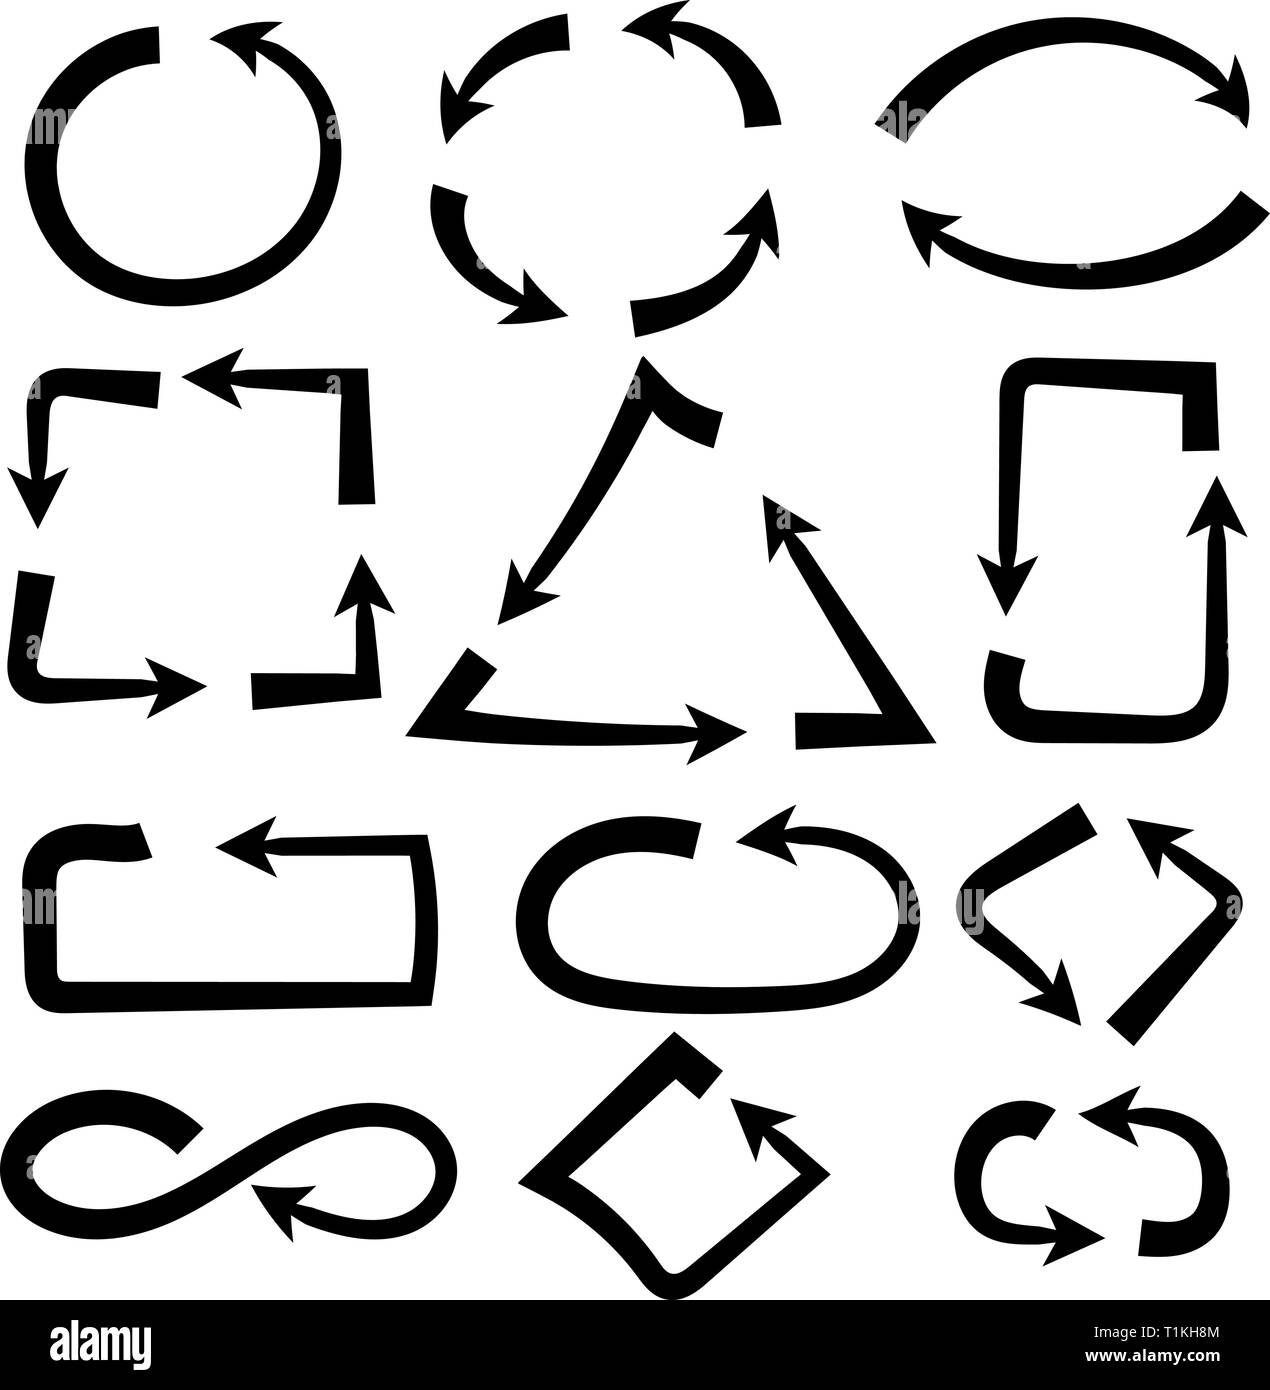 Combinaisons de flèches. Simple et complexe. Black bold hand drawn icons Illustration de Vecteur